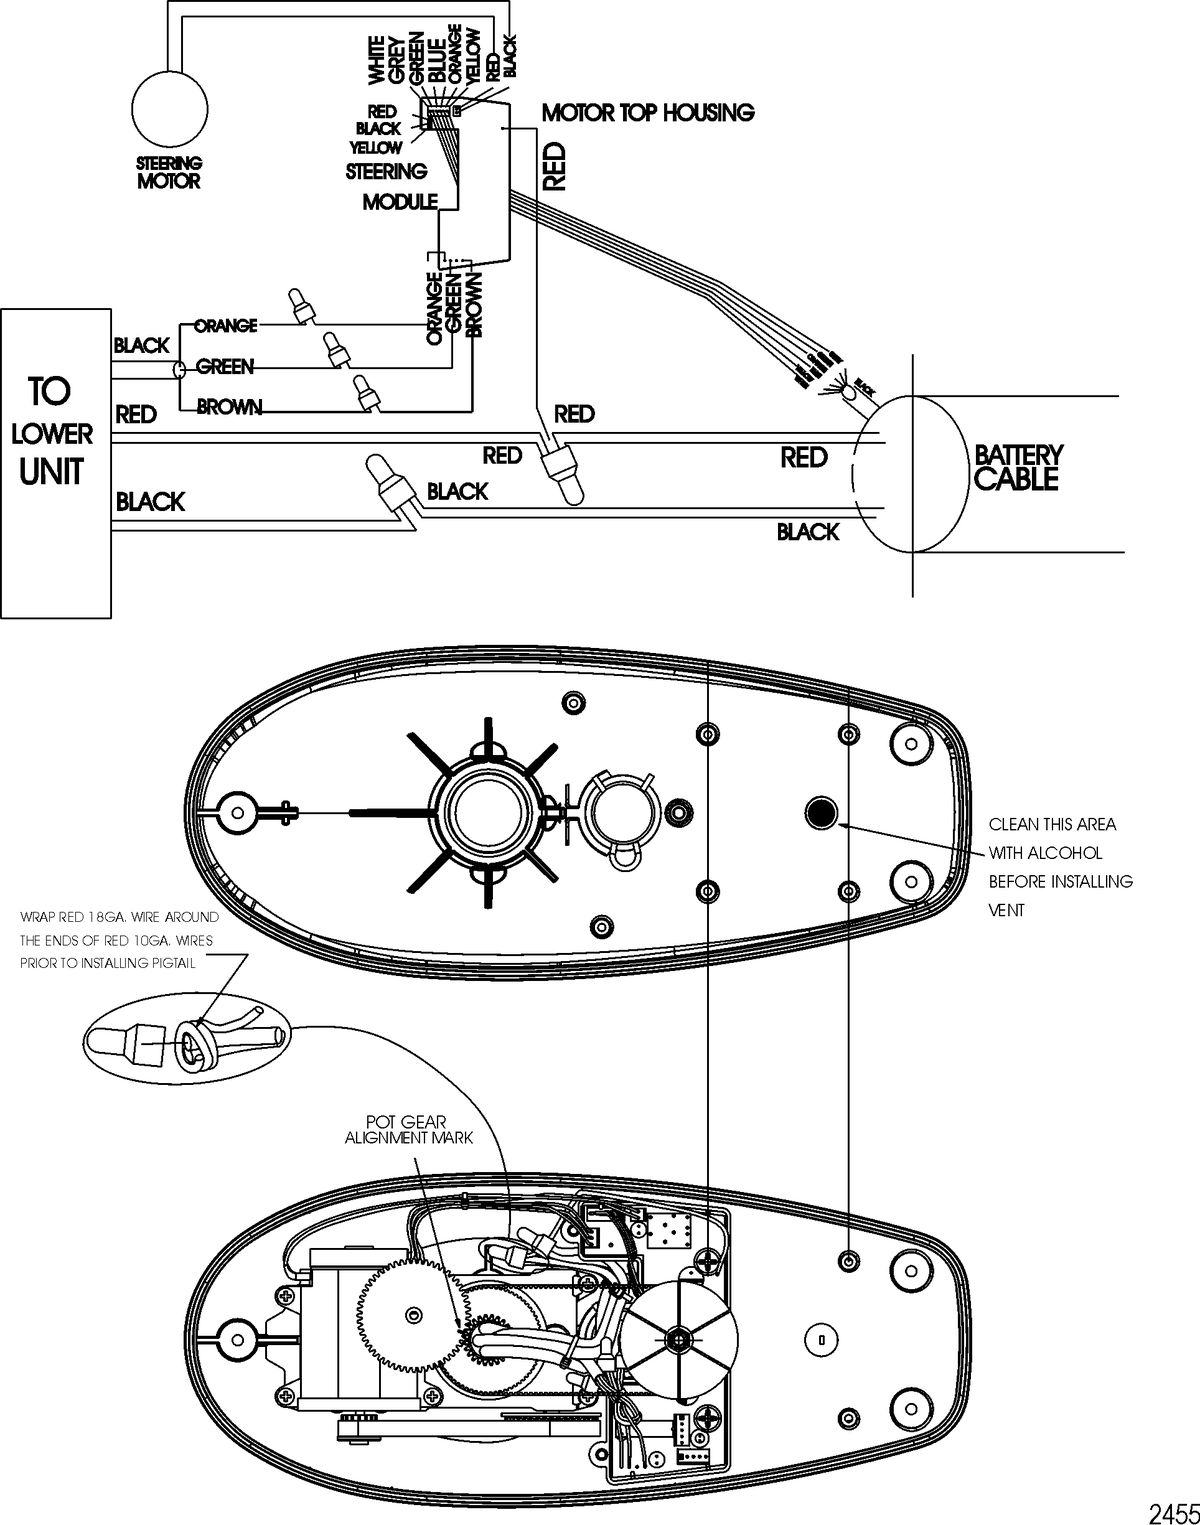 TROLLING MOTOR MOTORGUIDE DIGITAL STEERING SERIES Wire Diagram(Model DS54FB) (12 Volt)